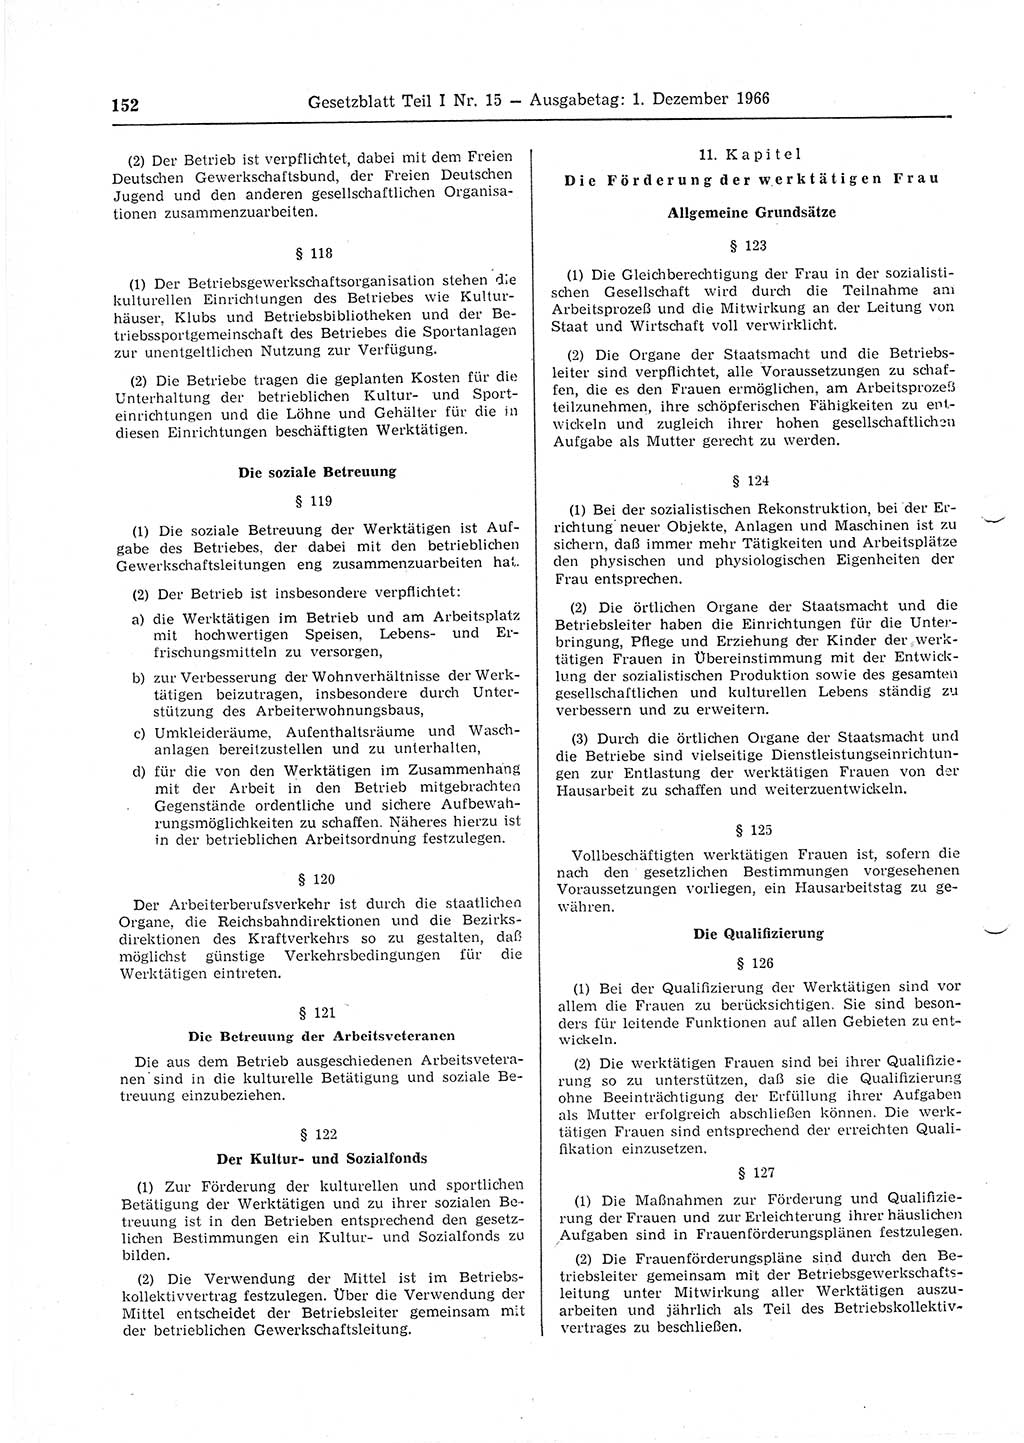 Gesetzblatt (GBl.) der Deutschen Demokratischen Republik (DDR) Teil Ⅰ 1966, Seite 152 (GBl. DDR Ⅰ 1966, S. 152)